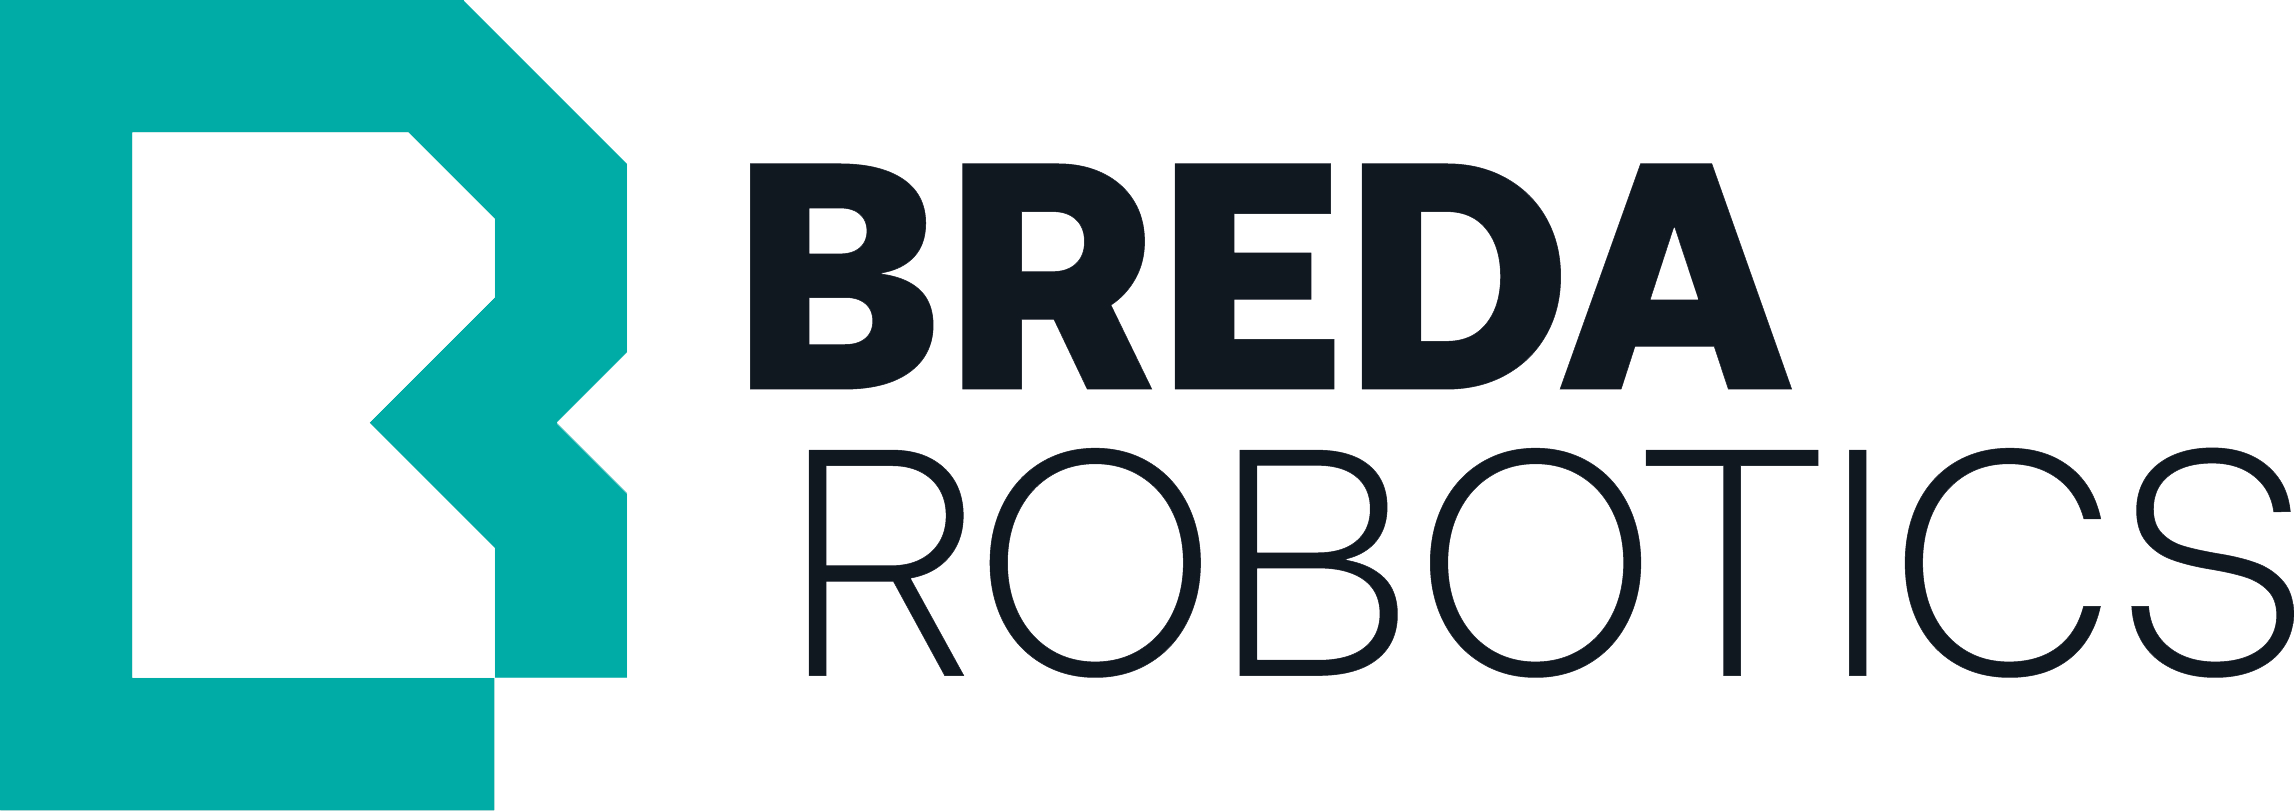 Breda Robotics